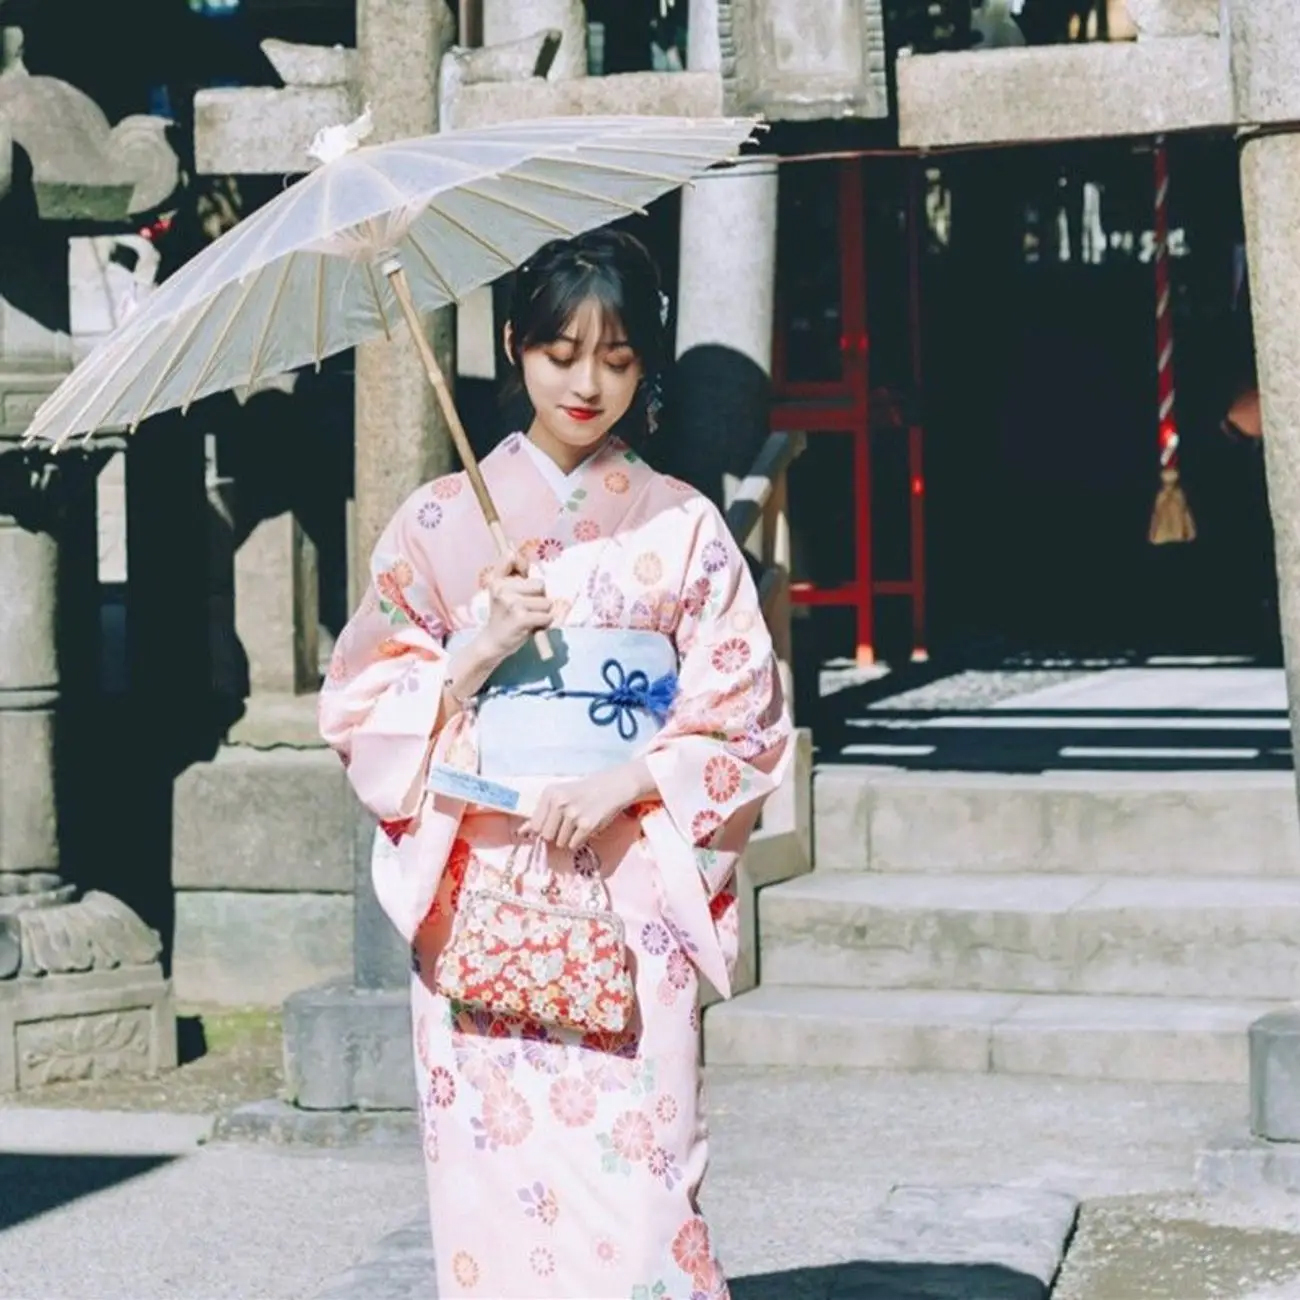 Áo Kimono Yukata Hồng Phấn Tặng Kèm Thắt Lưng